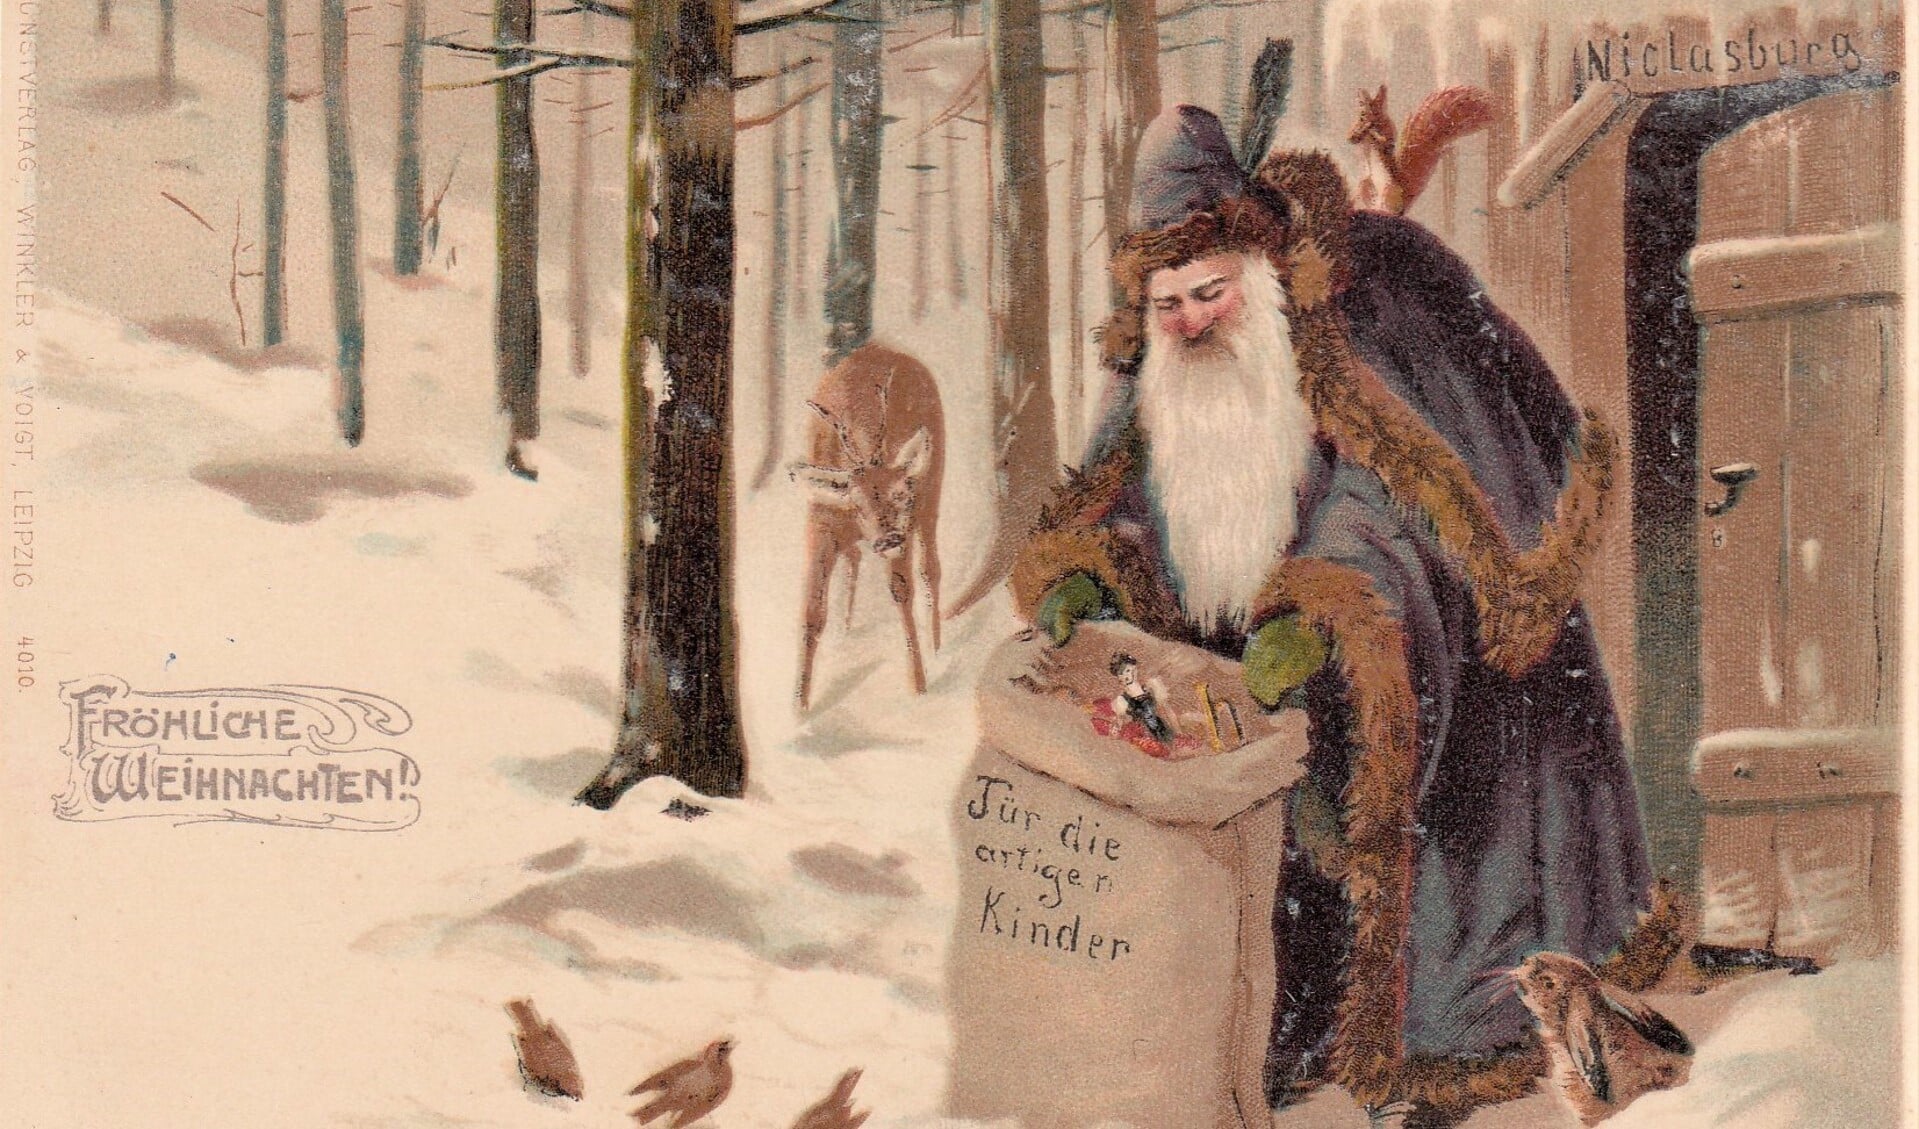 Over de kerstman en Santa Claus doen wilde verhalen de ronde. 